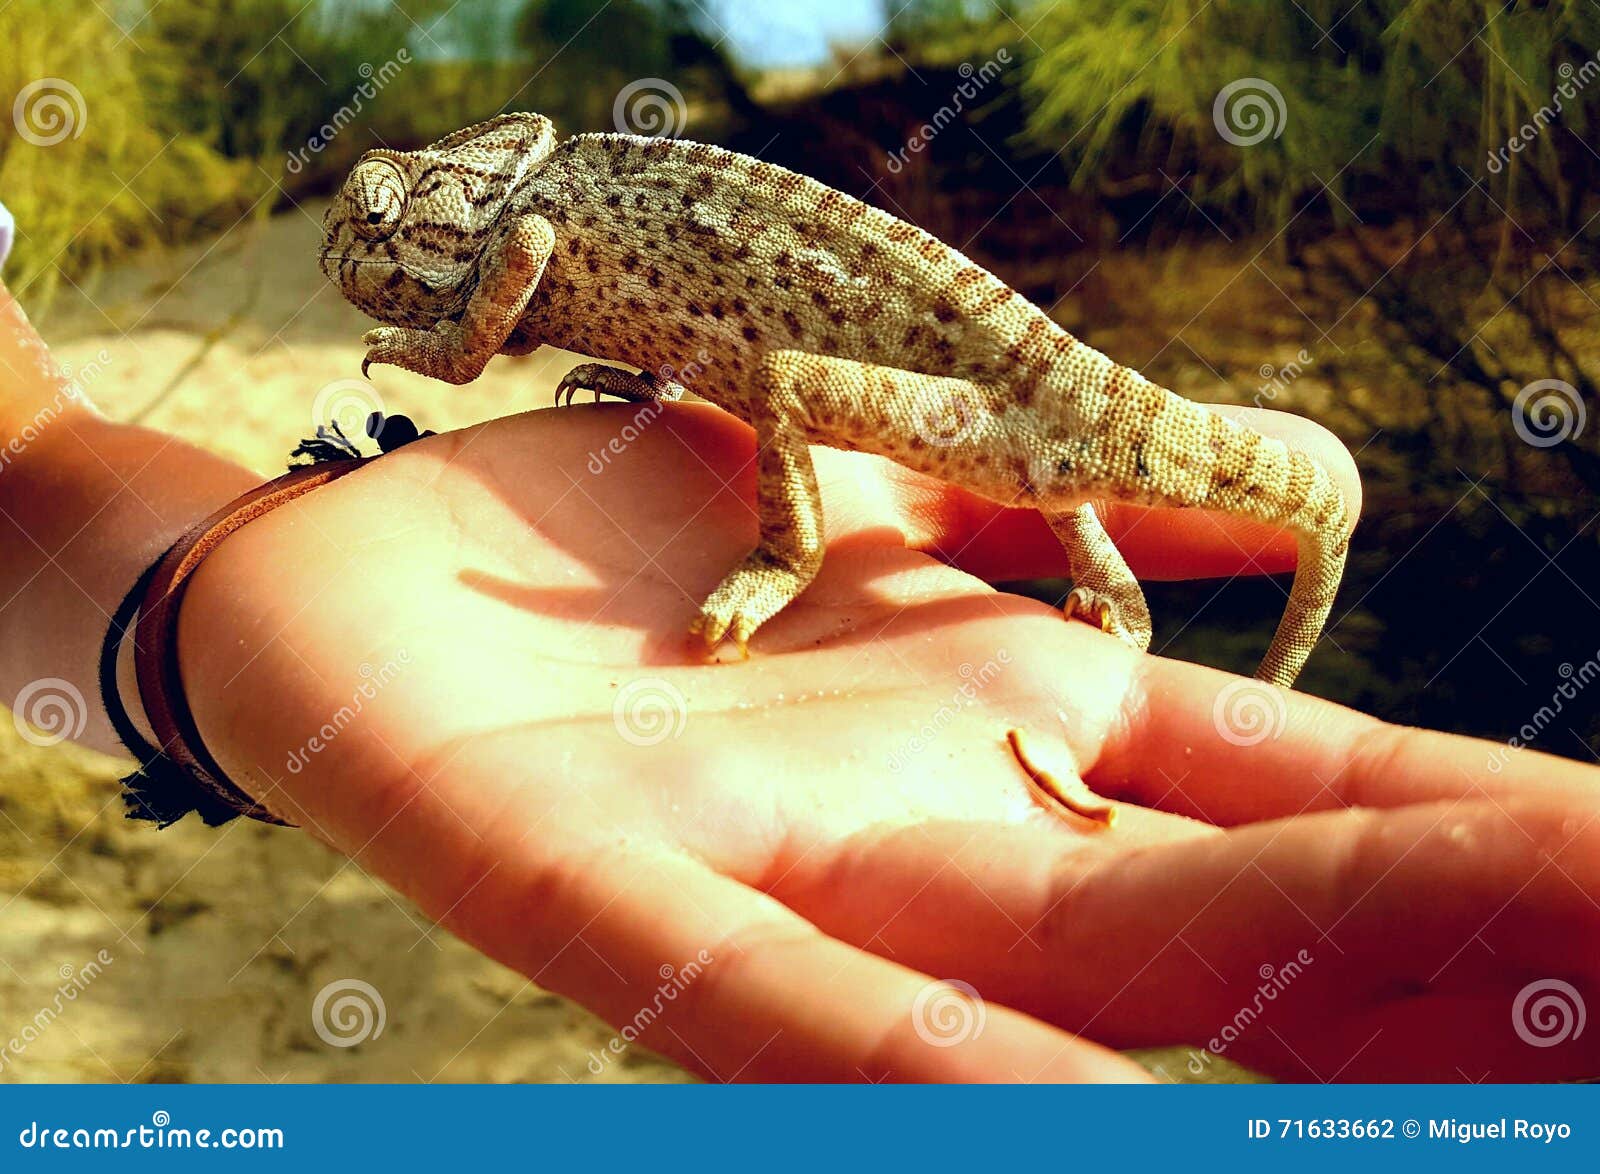 chameleon in hand